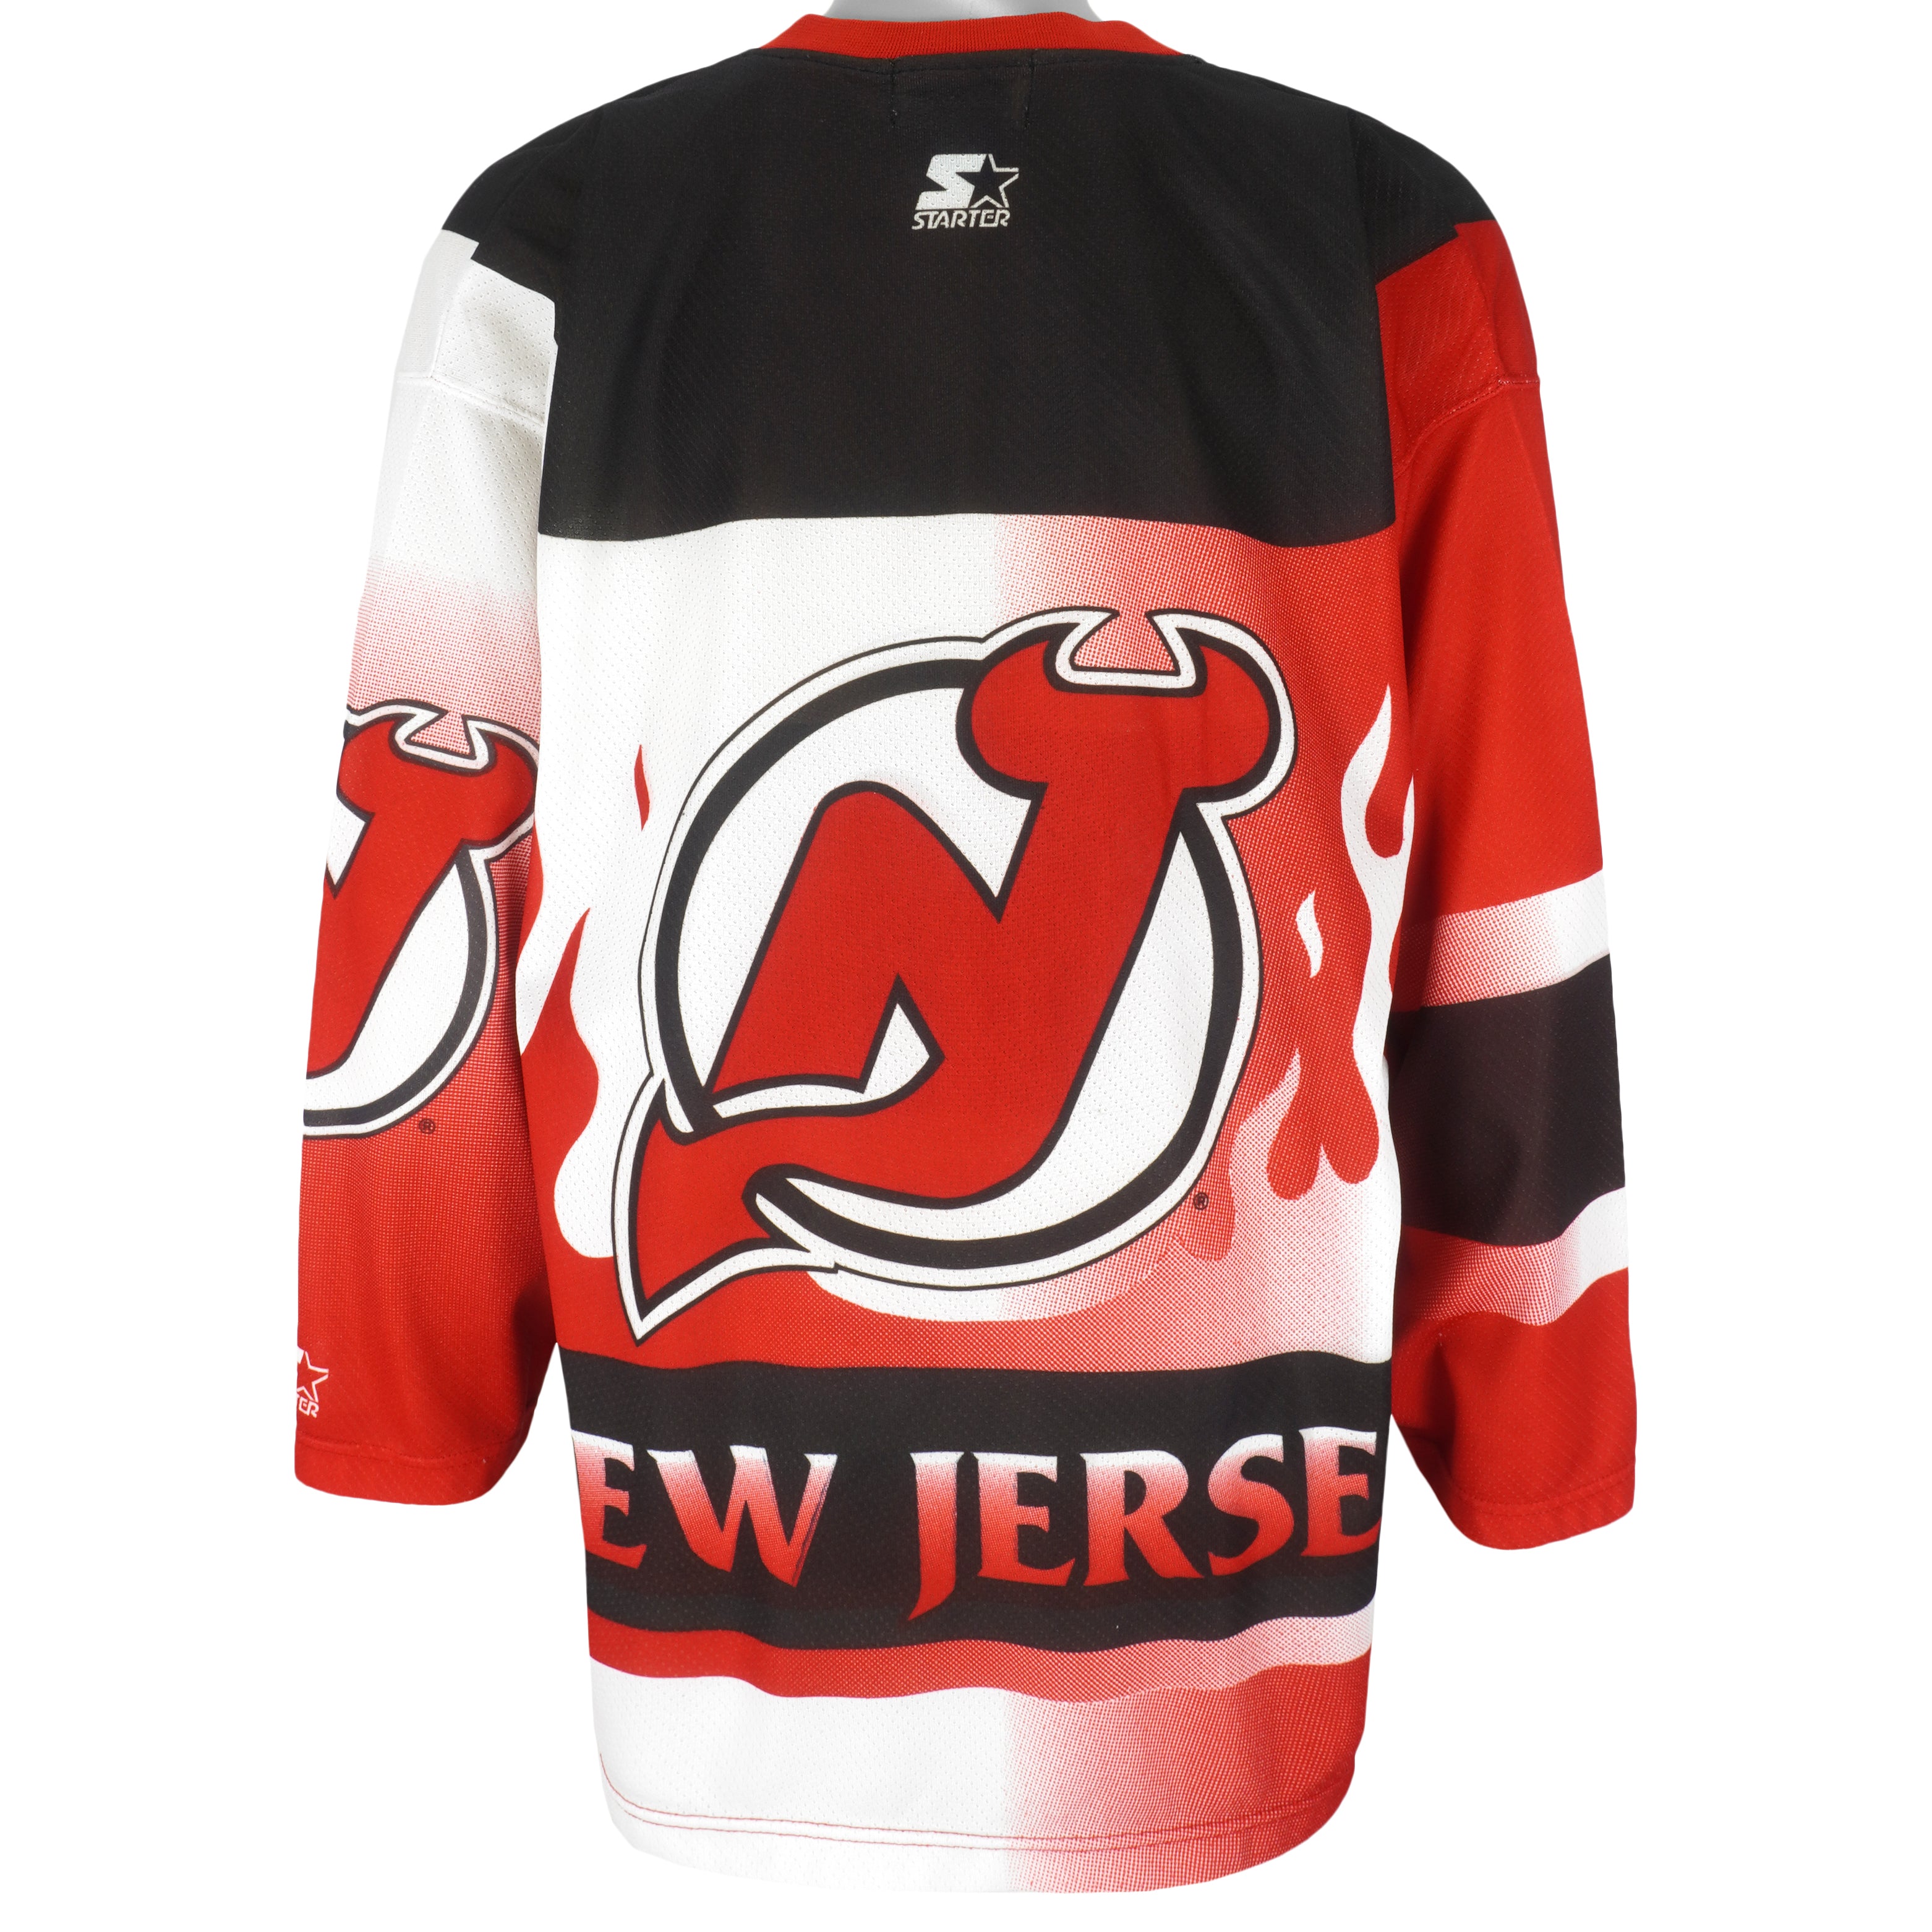 New Jersey Devils vintage apparel